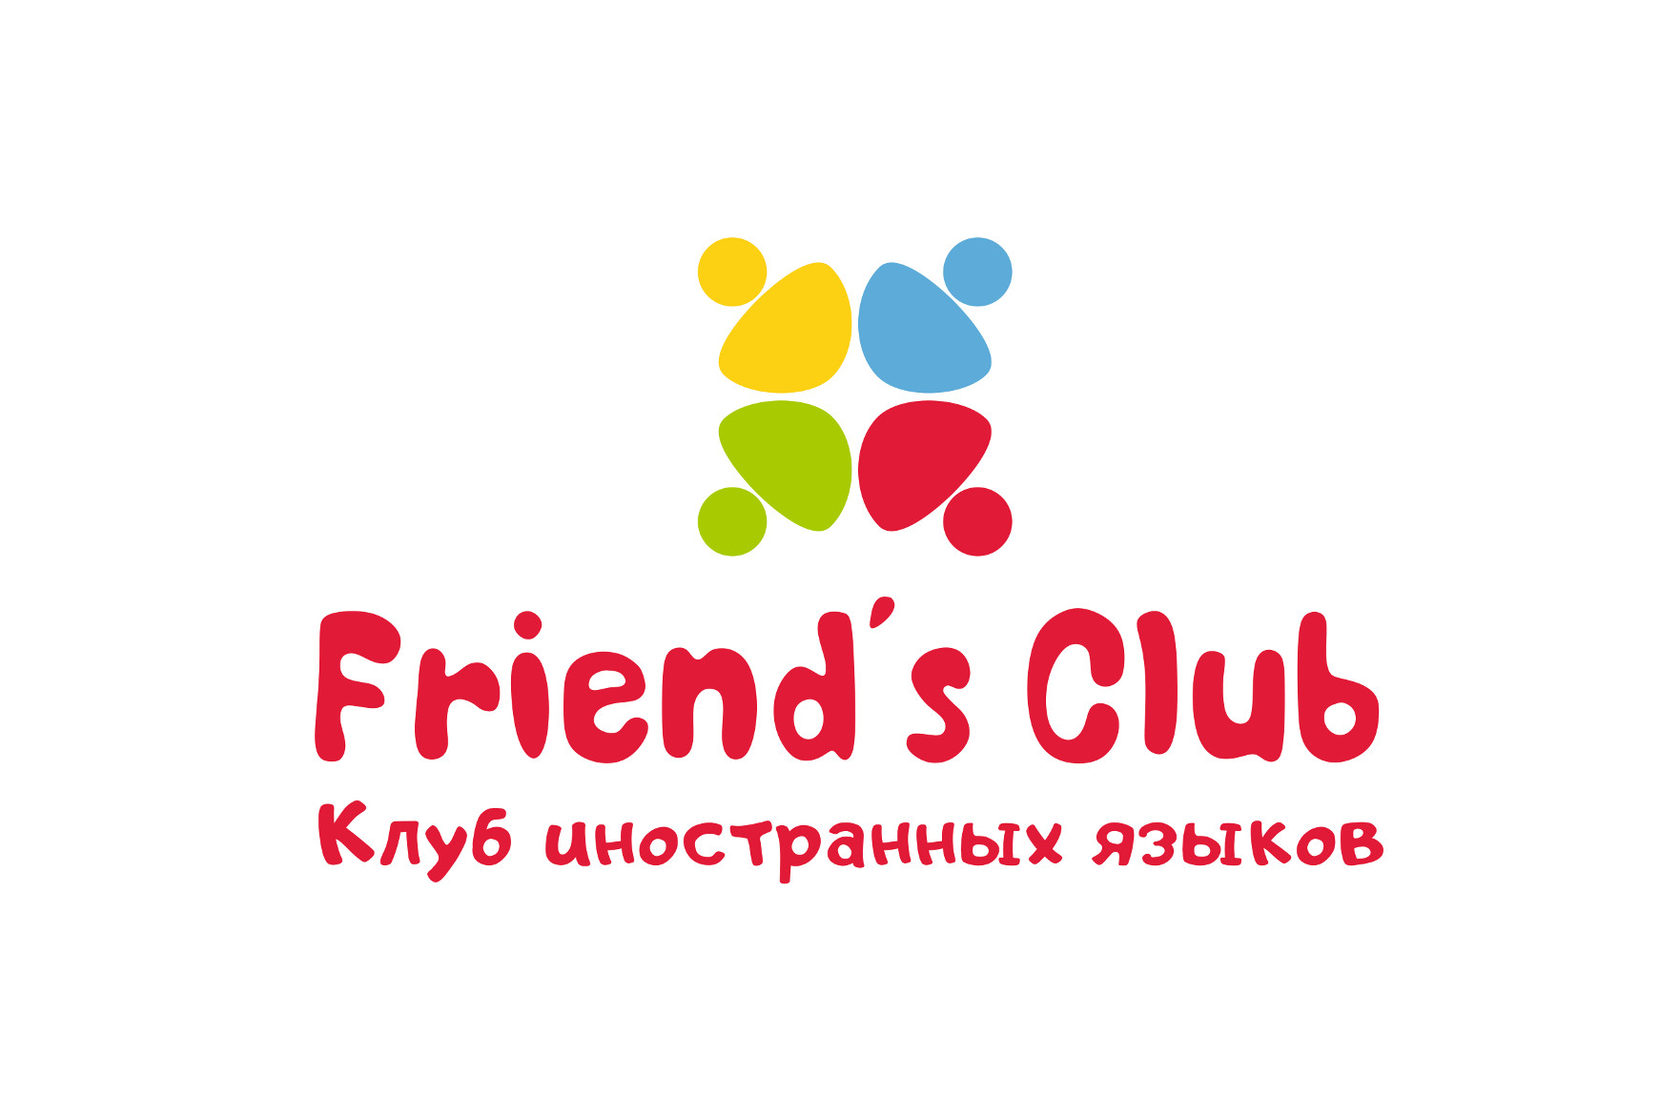 Friends Club. Friends Club английский язык. Французский клуб. Обнинск Welcome.